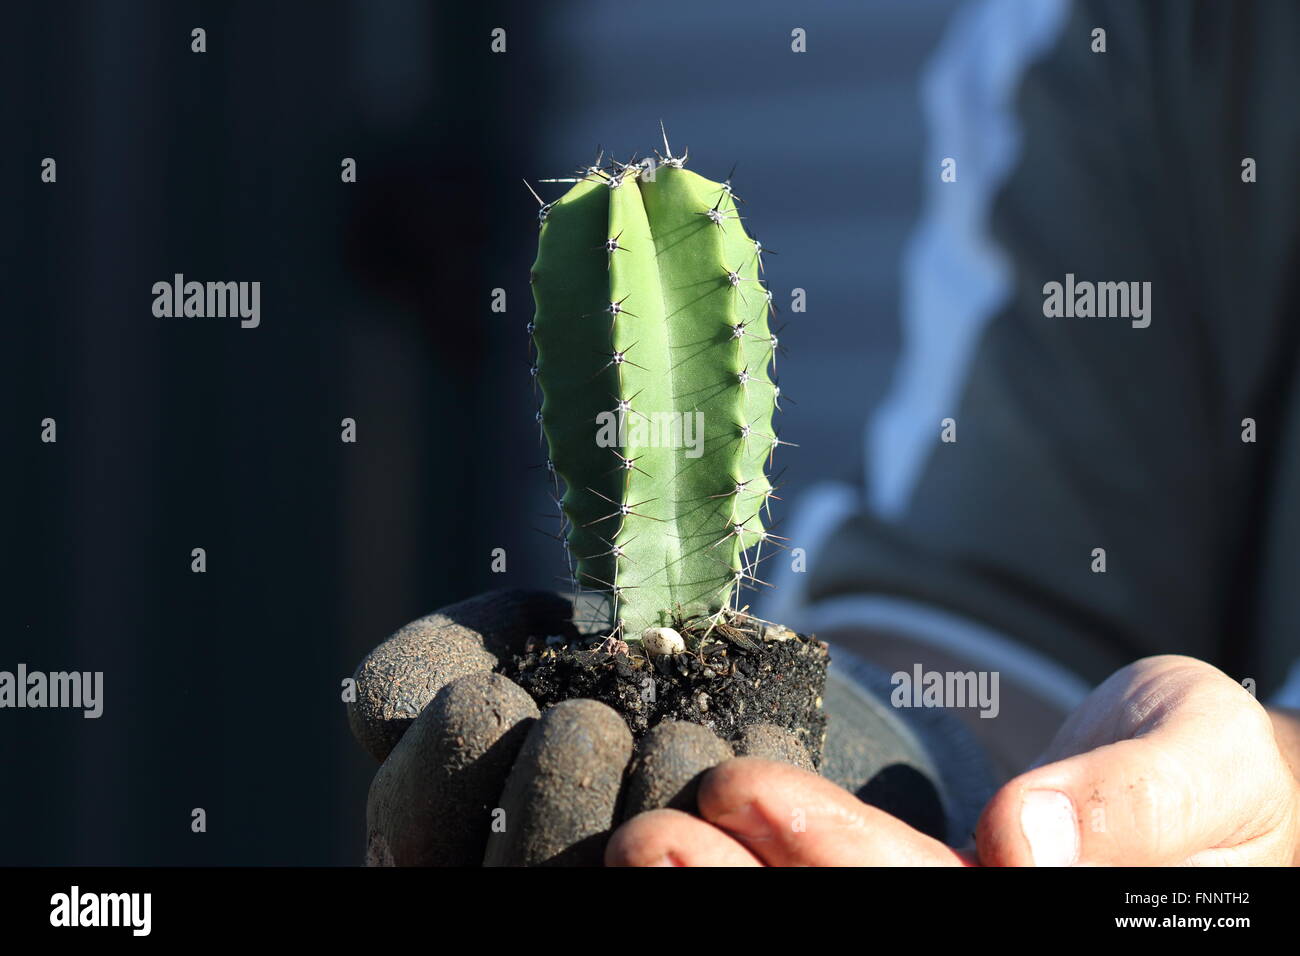 Young Atenocereus pruinosus or known as Grey Organ Pipe Cactus Stock Photo